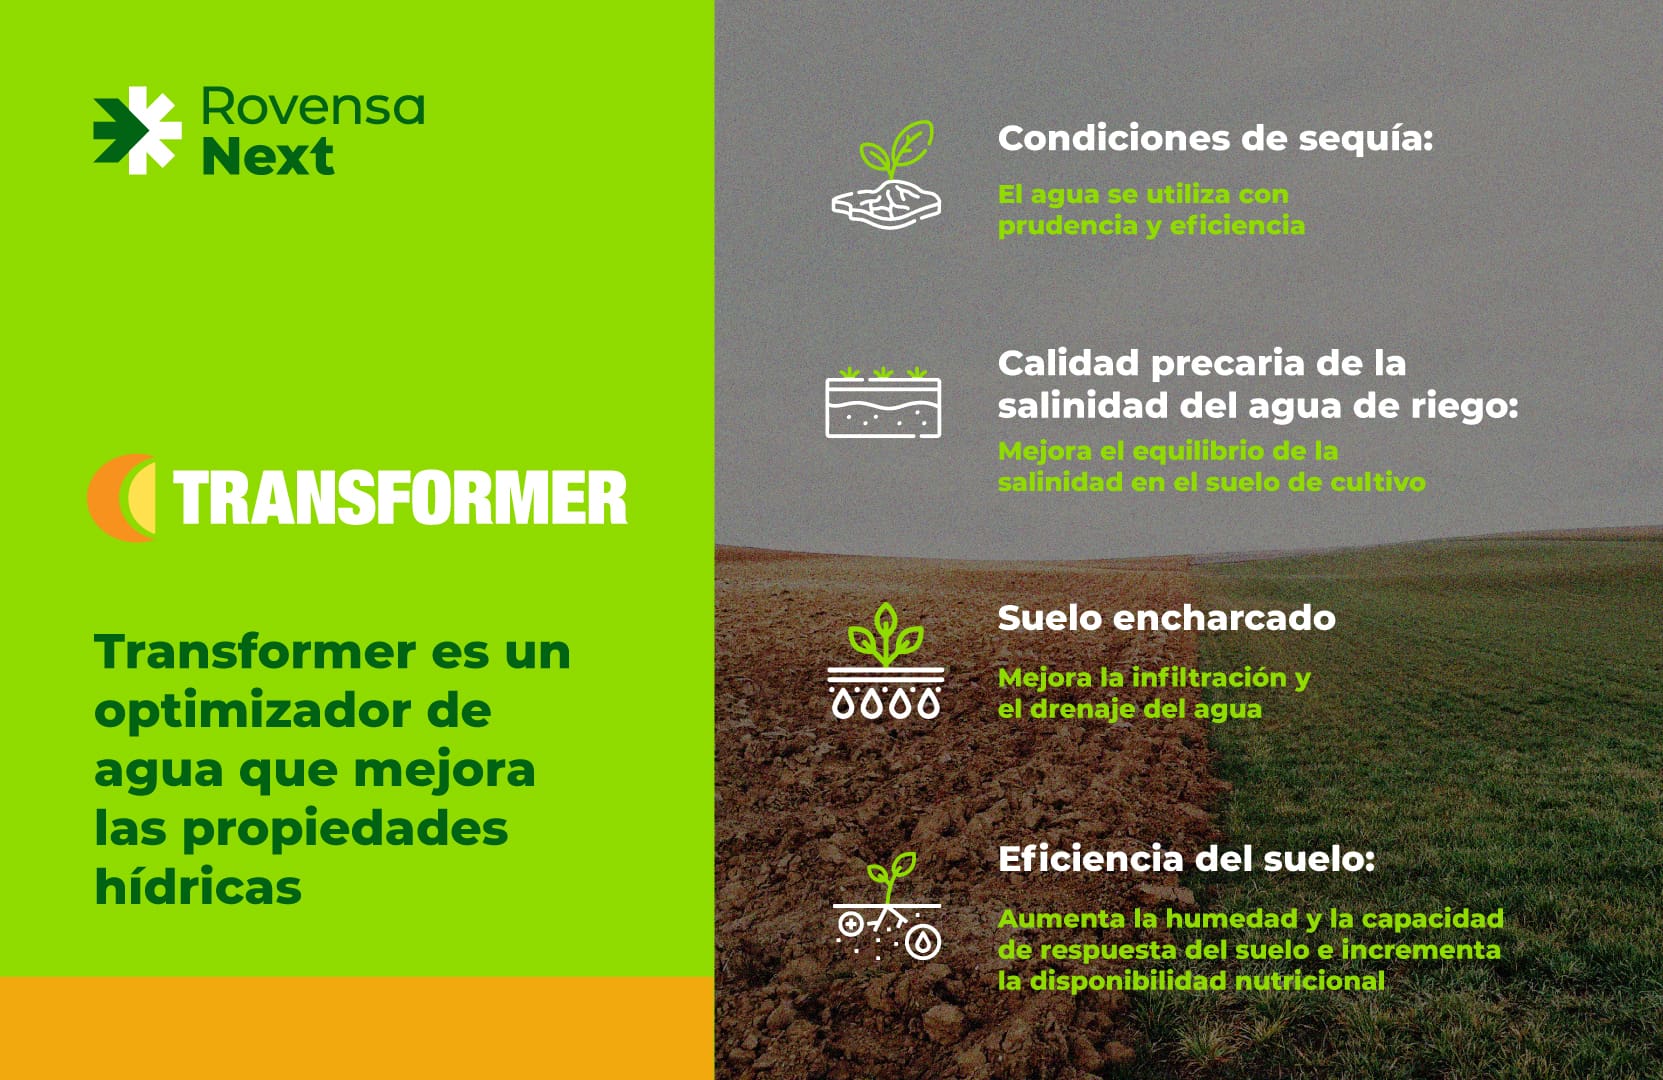 Transformer optimizador de agua que mejora las propiedades hídricas Rovensa Next España